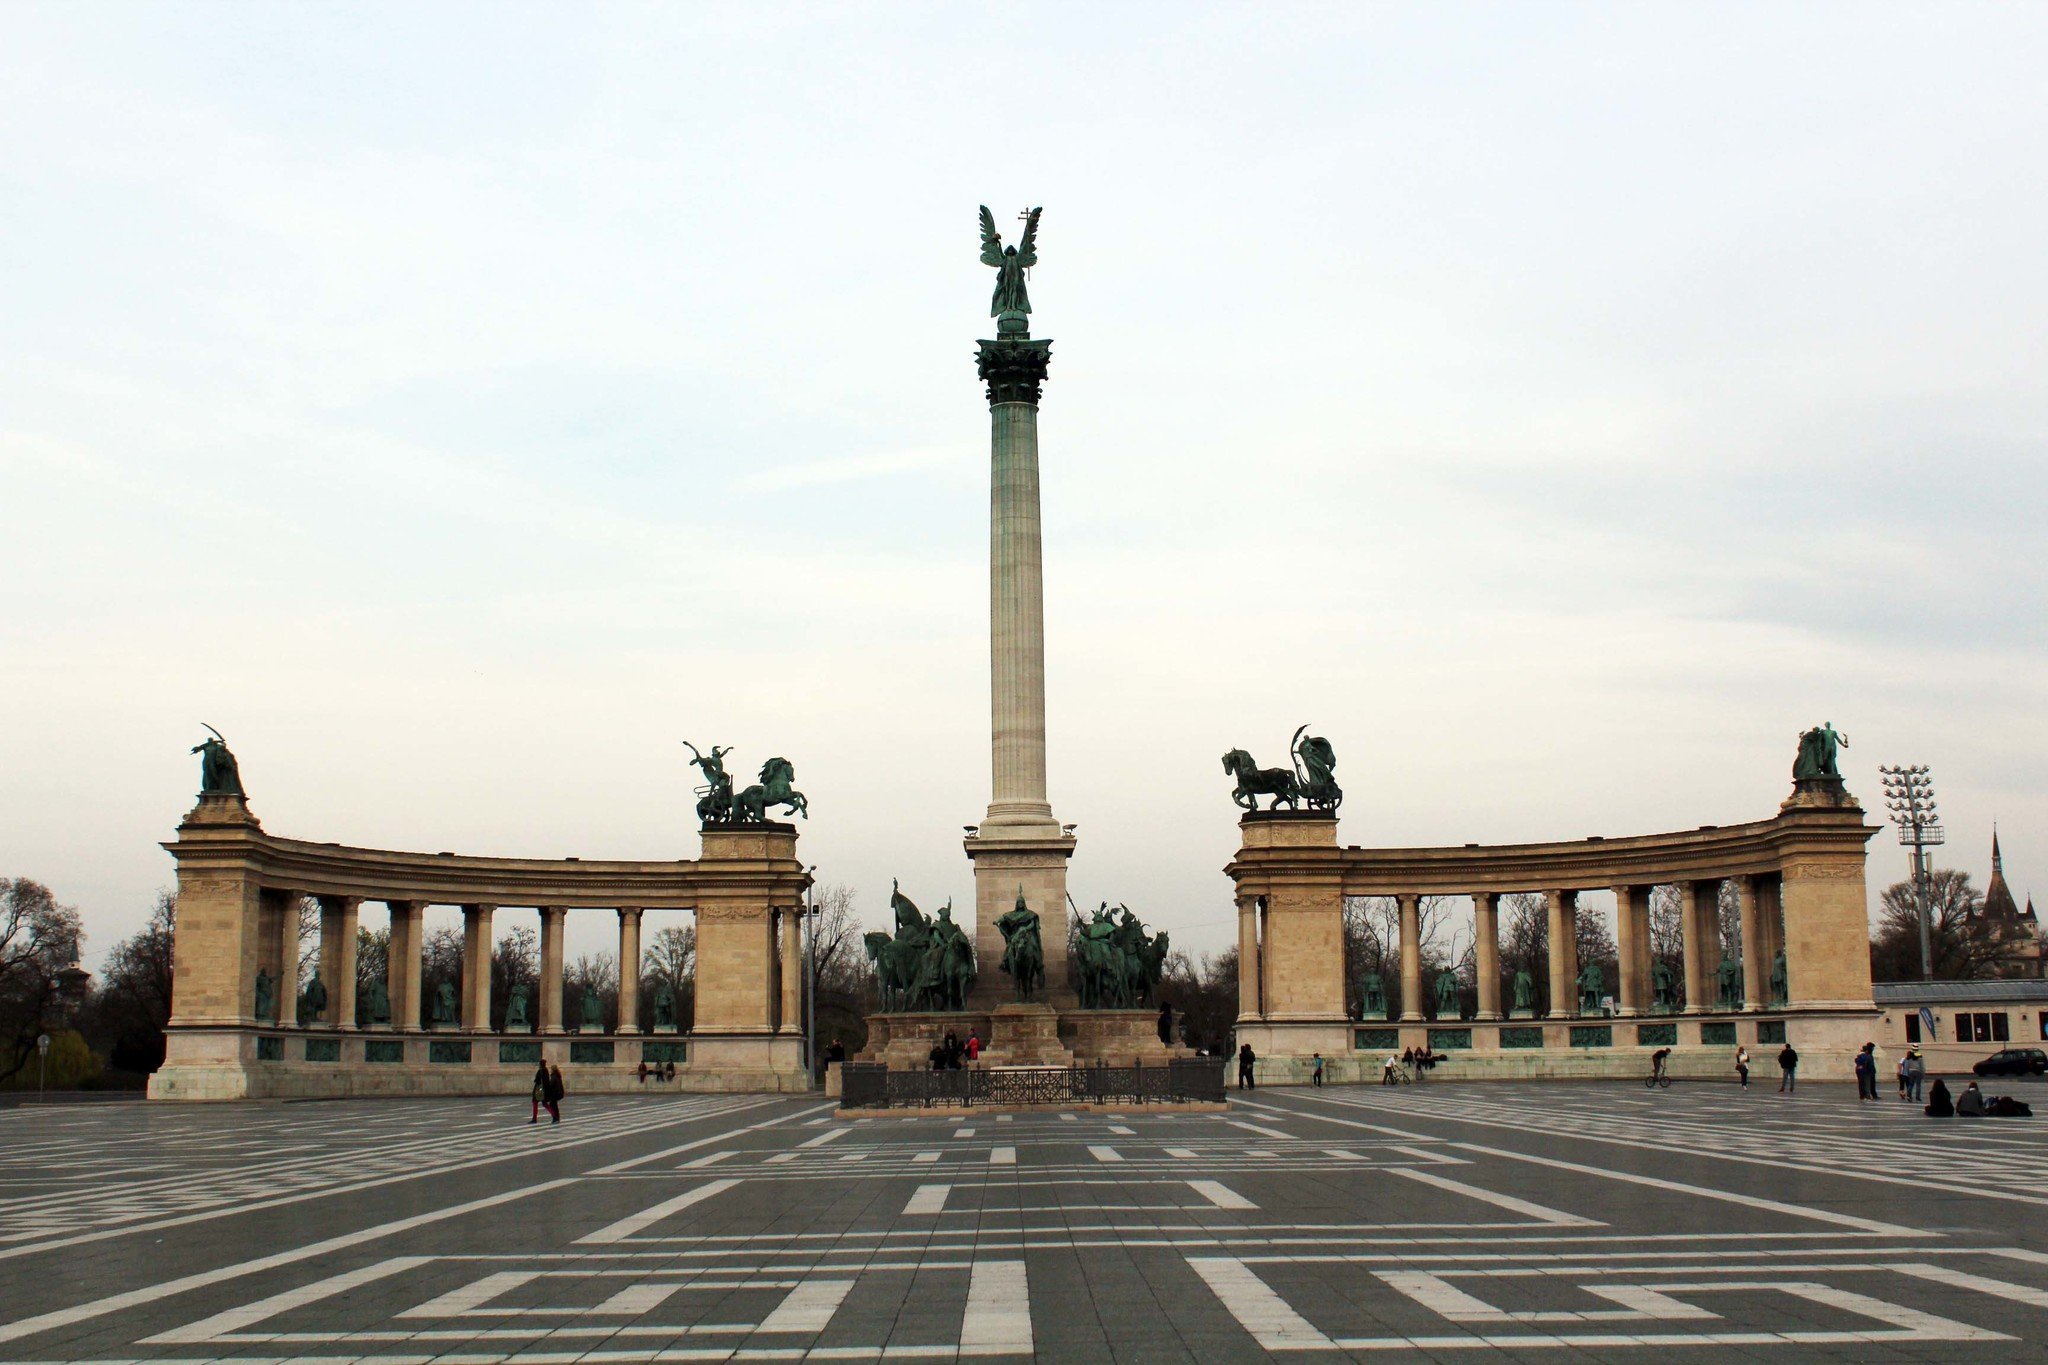 Heroes square, Budapest, Hungary kató alpár